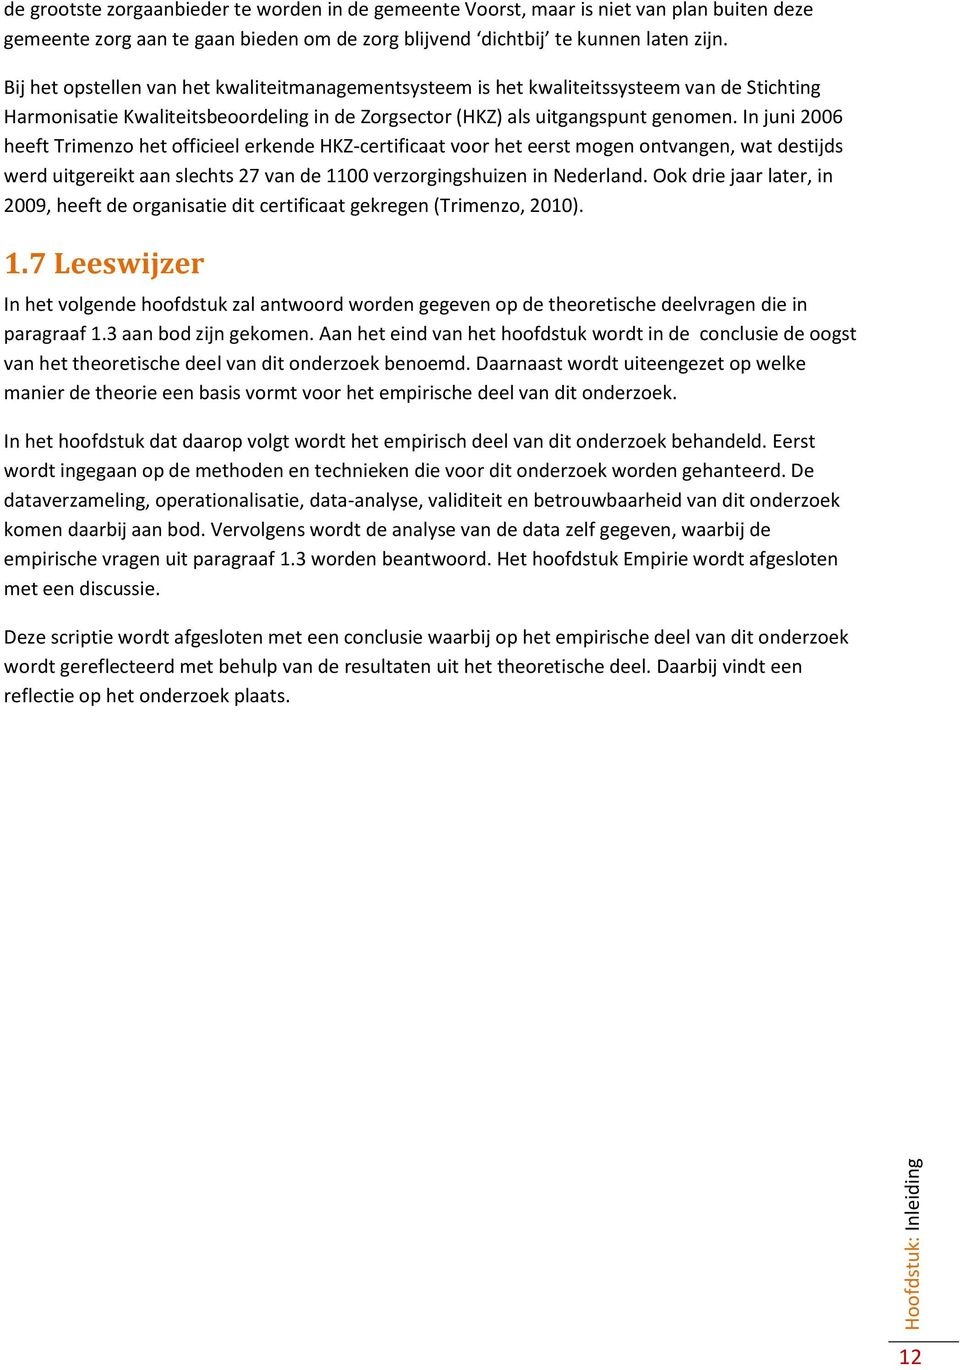 In juni 2006 heeft Trimenzo het officieel erkende HKZ-certificaat voor het eerst mogen ontvangen, wat destijds werd uitgereikt aan slechts 27 van de 1100 verzorgingshuizen in Nederland.